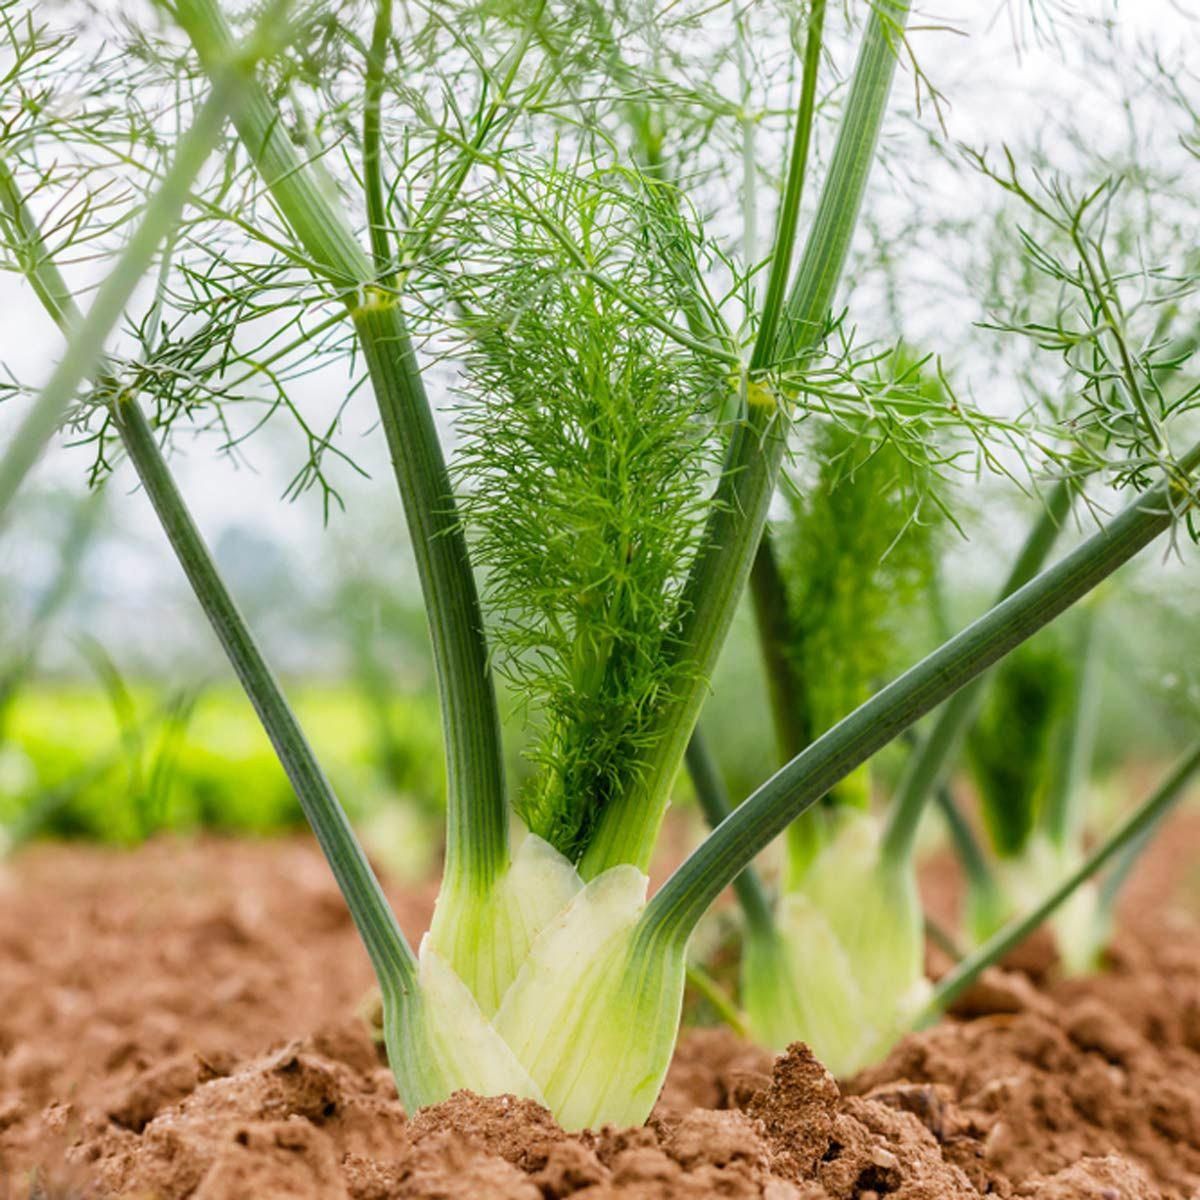 Fennel Bulbs - certified organic fennel